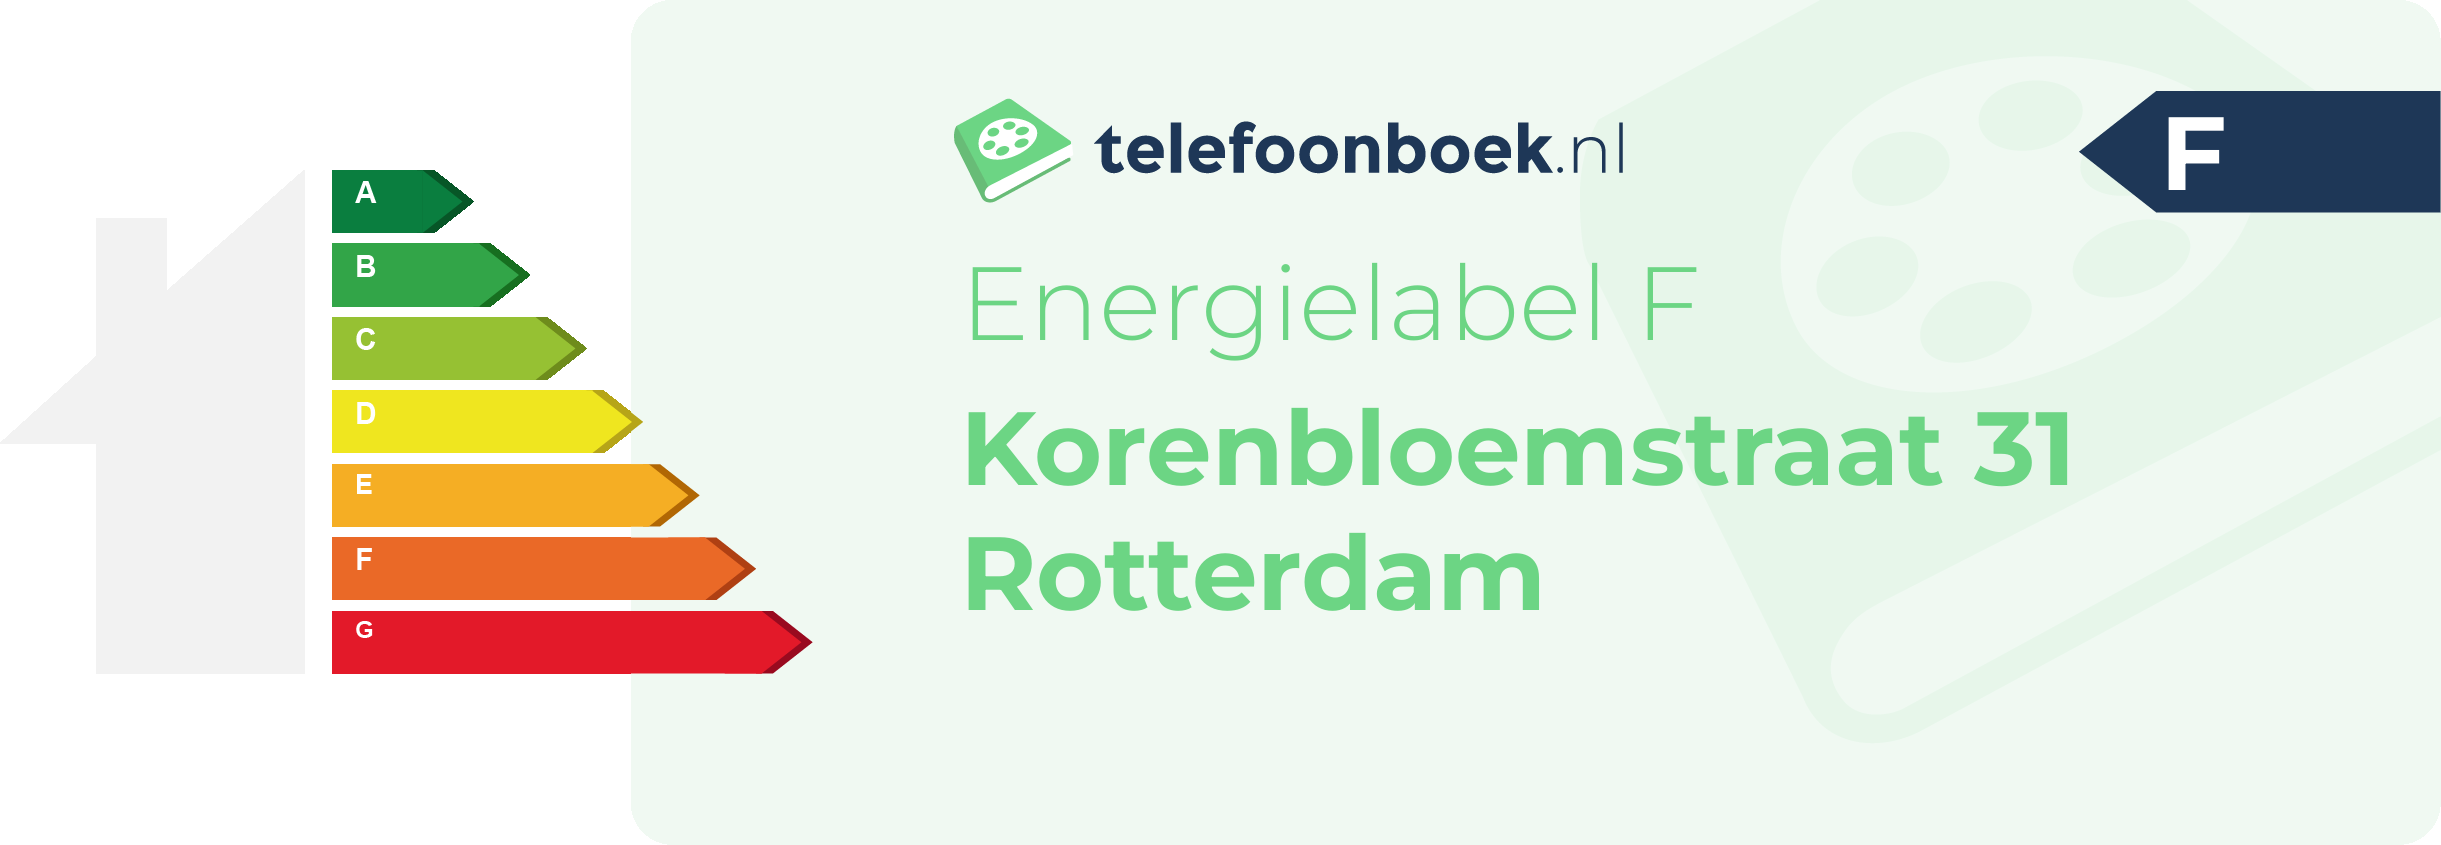 Energielabel Korenbloemstraat 31 Rotterdam